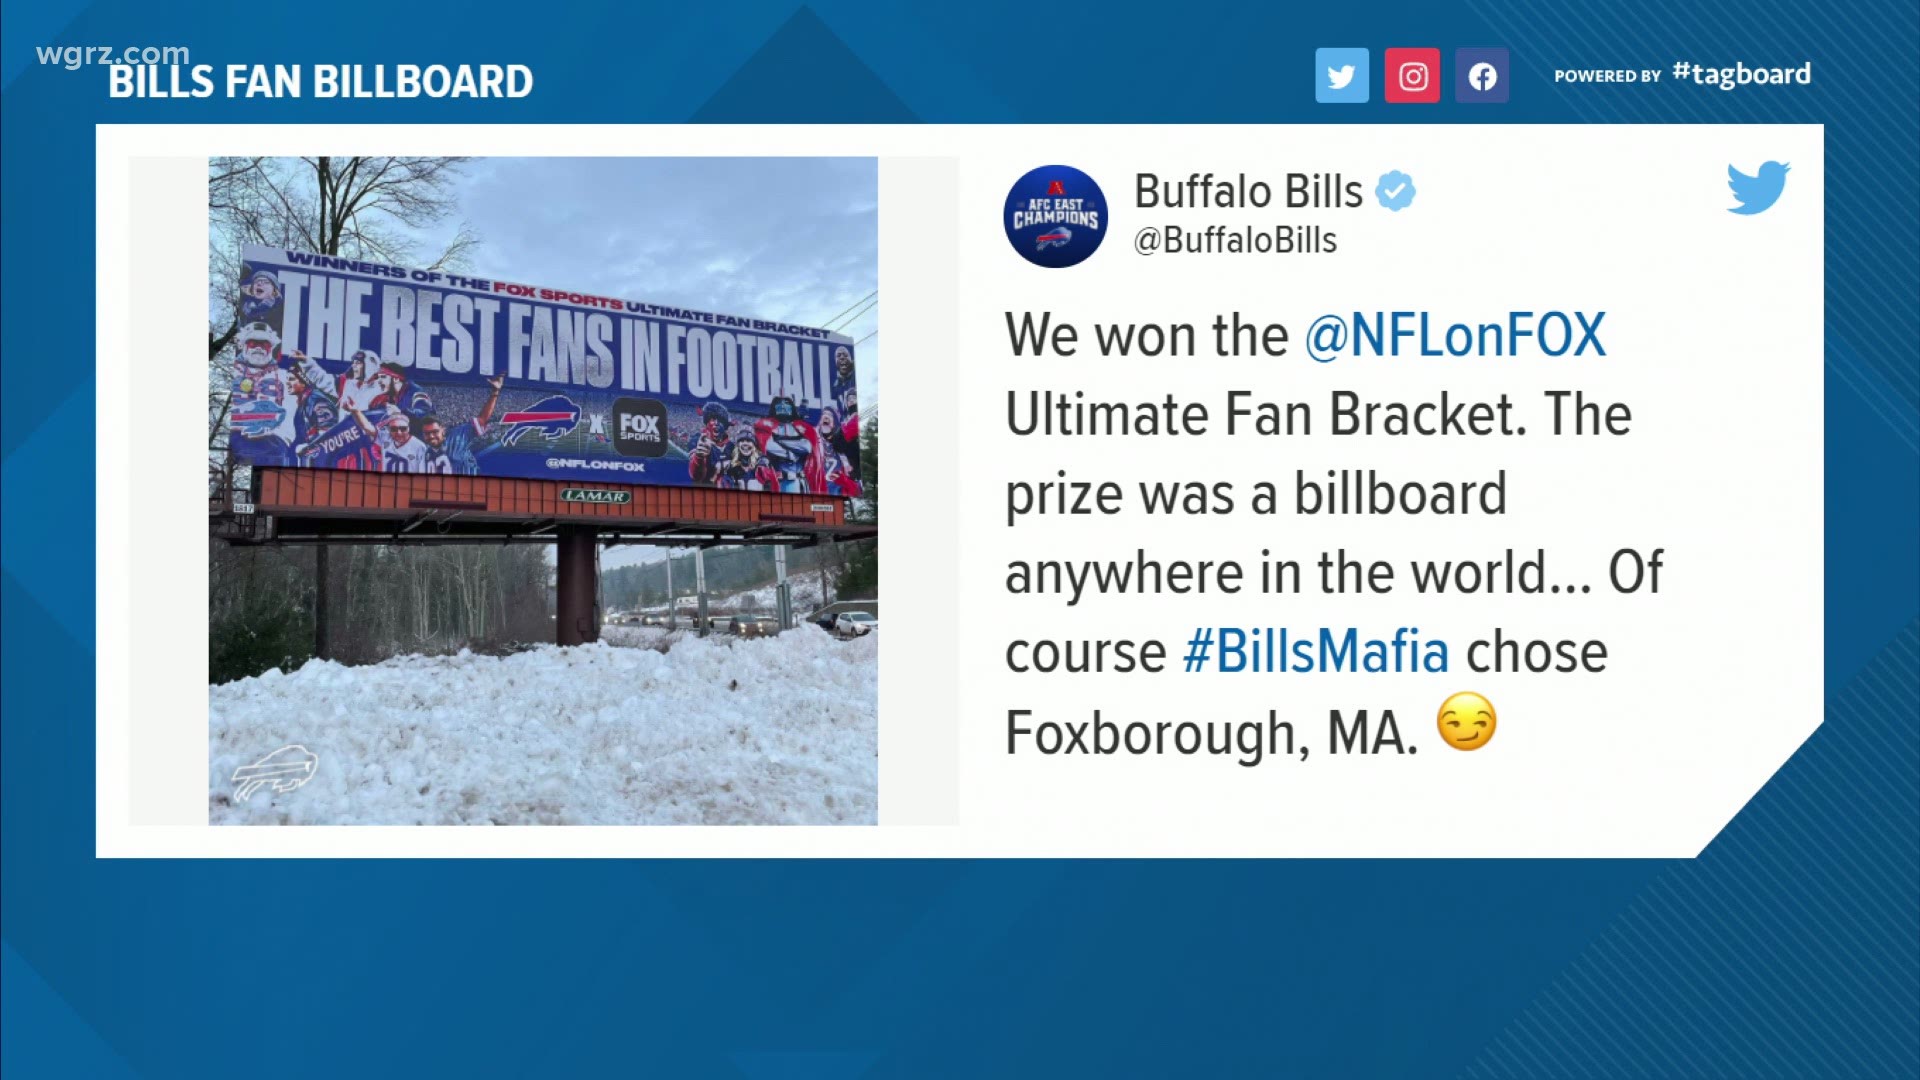 The billboard was the prize for winning Fox Sports Ultimate Fan Bracket.